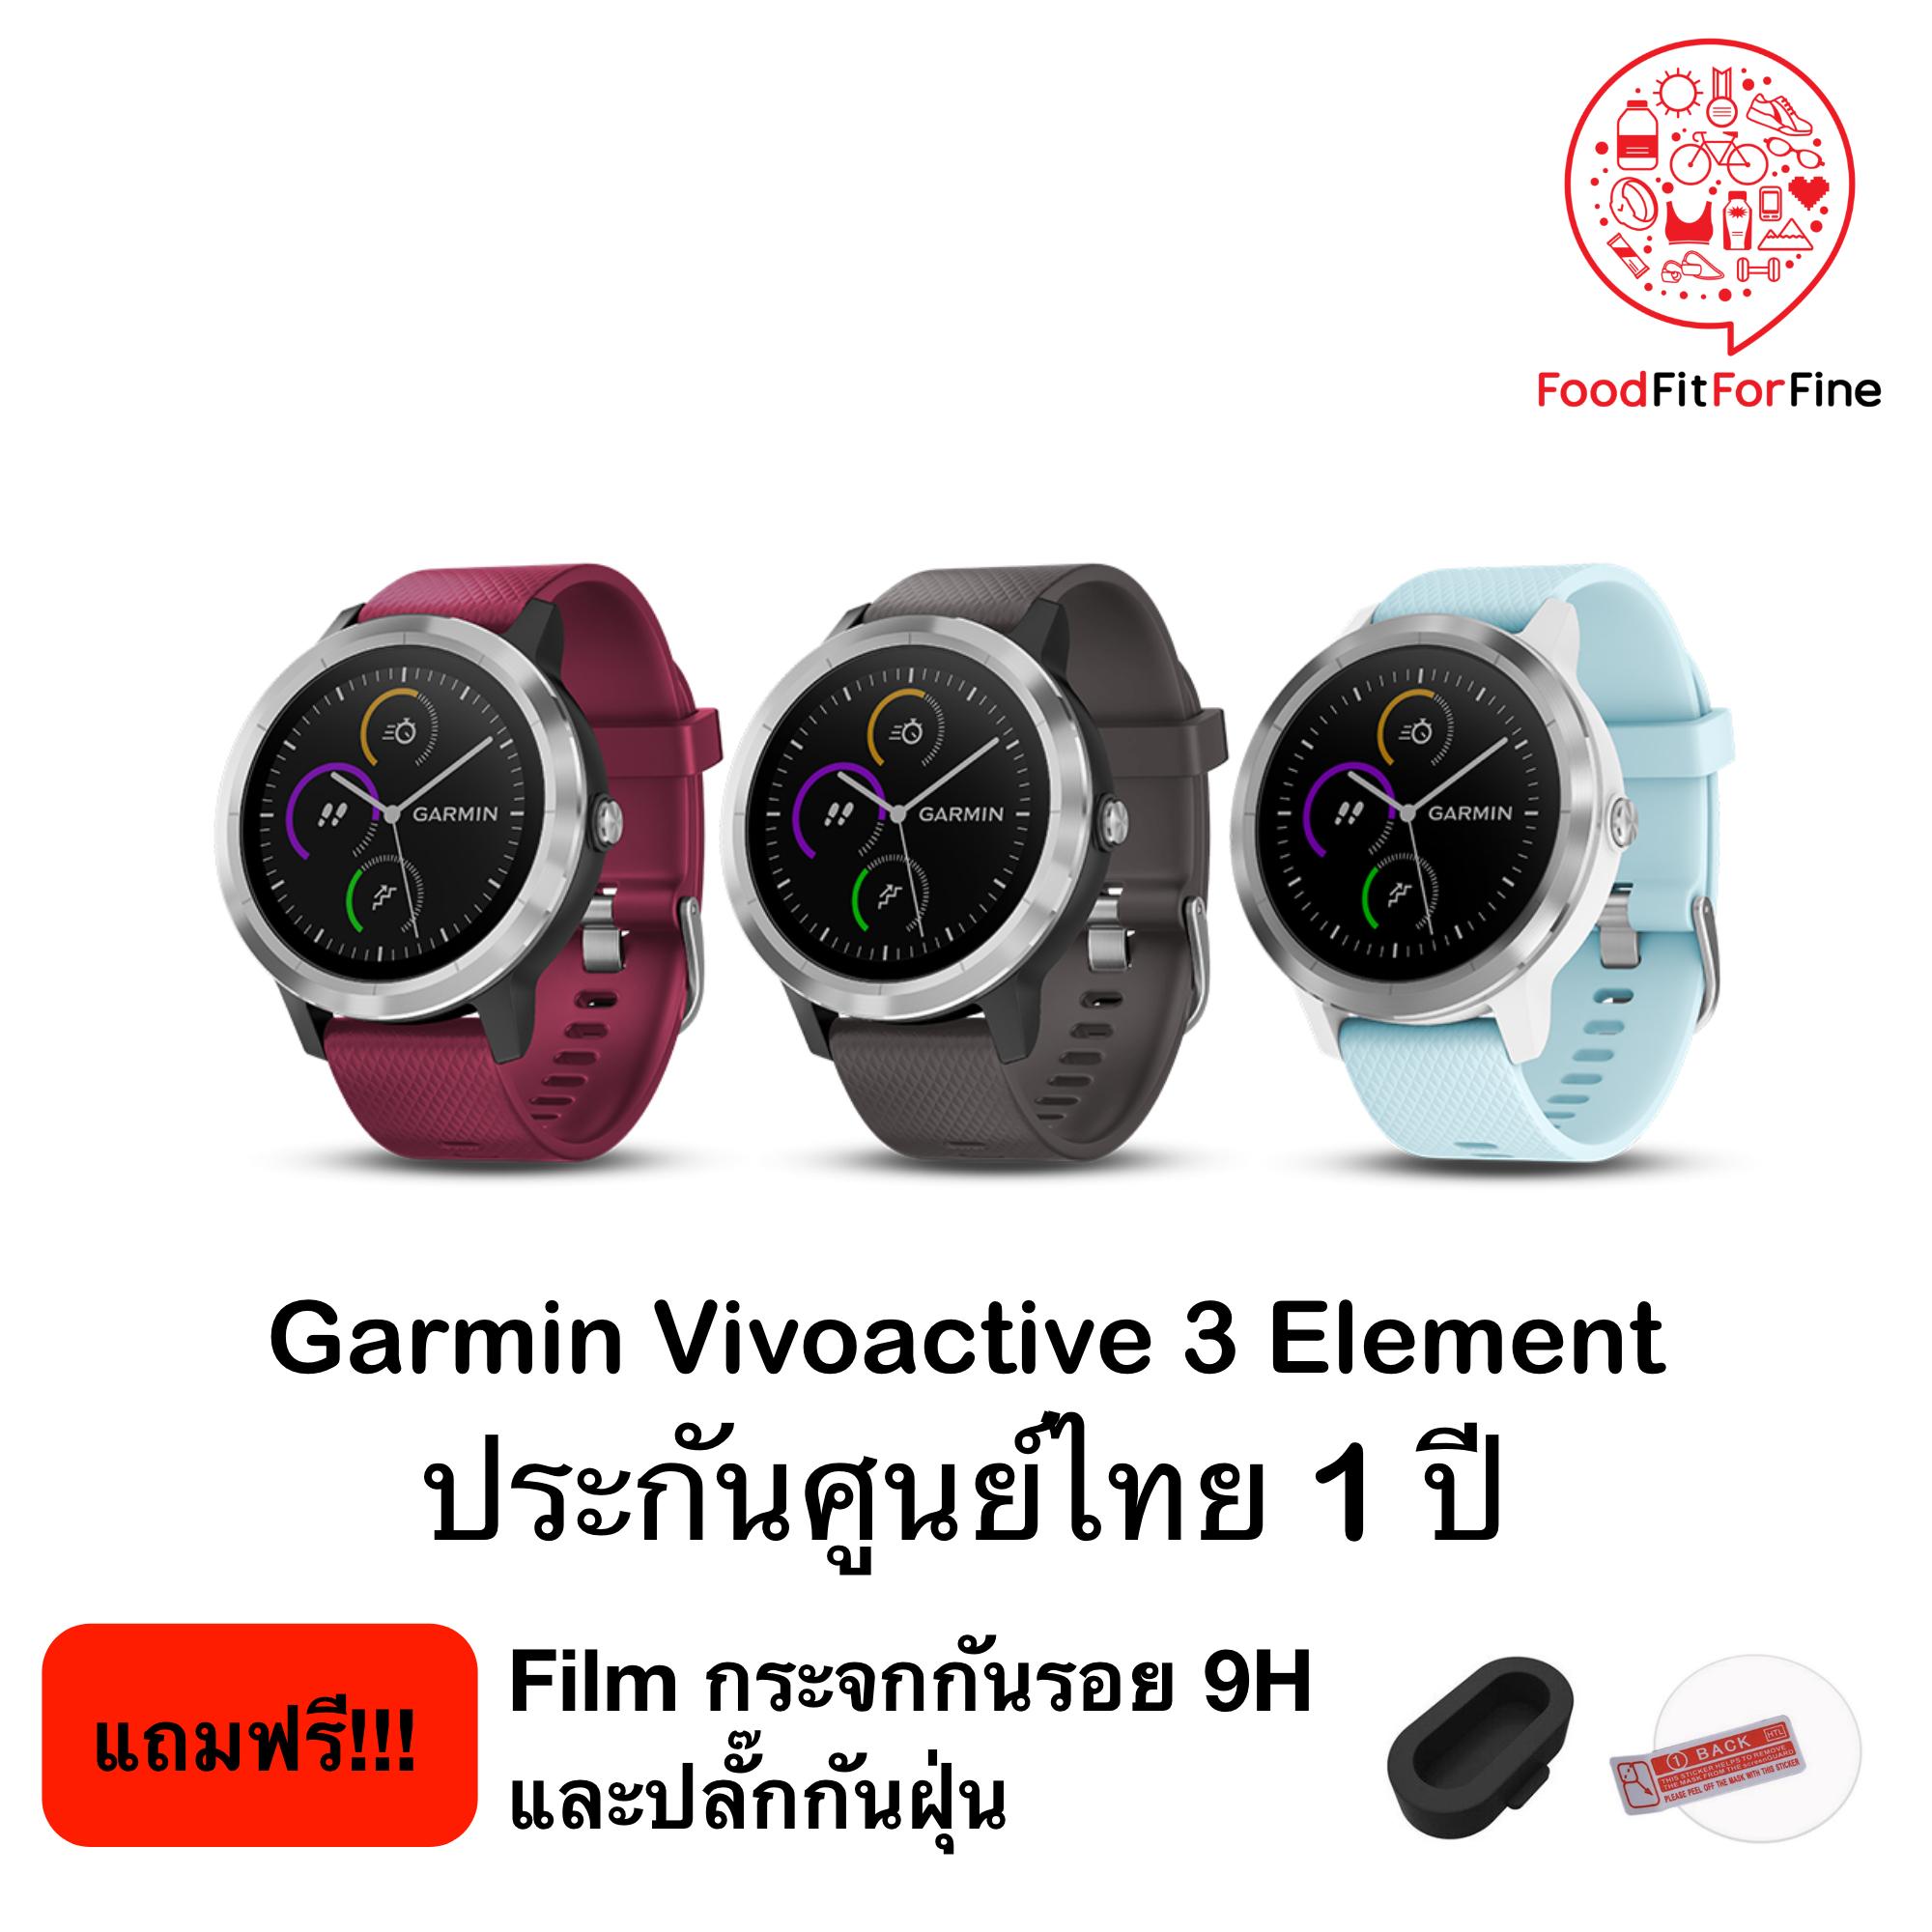 การใช้งาน  เชียงราย Garmin Vivoactive 3 Element ประกันศูนย์ไทย 1 ปี แถมฟรี ปลั๊กกันฝุ่น และ Film กันรอยกระจก 9H